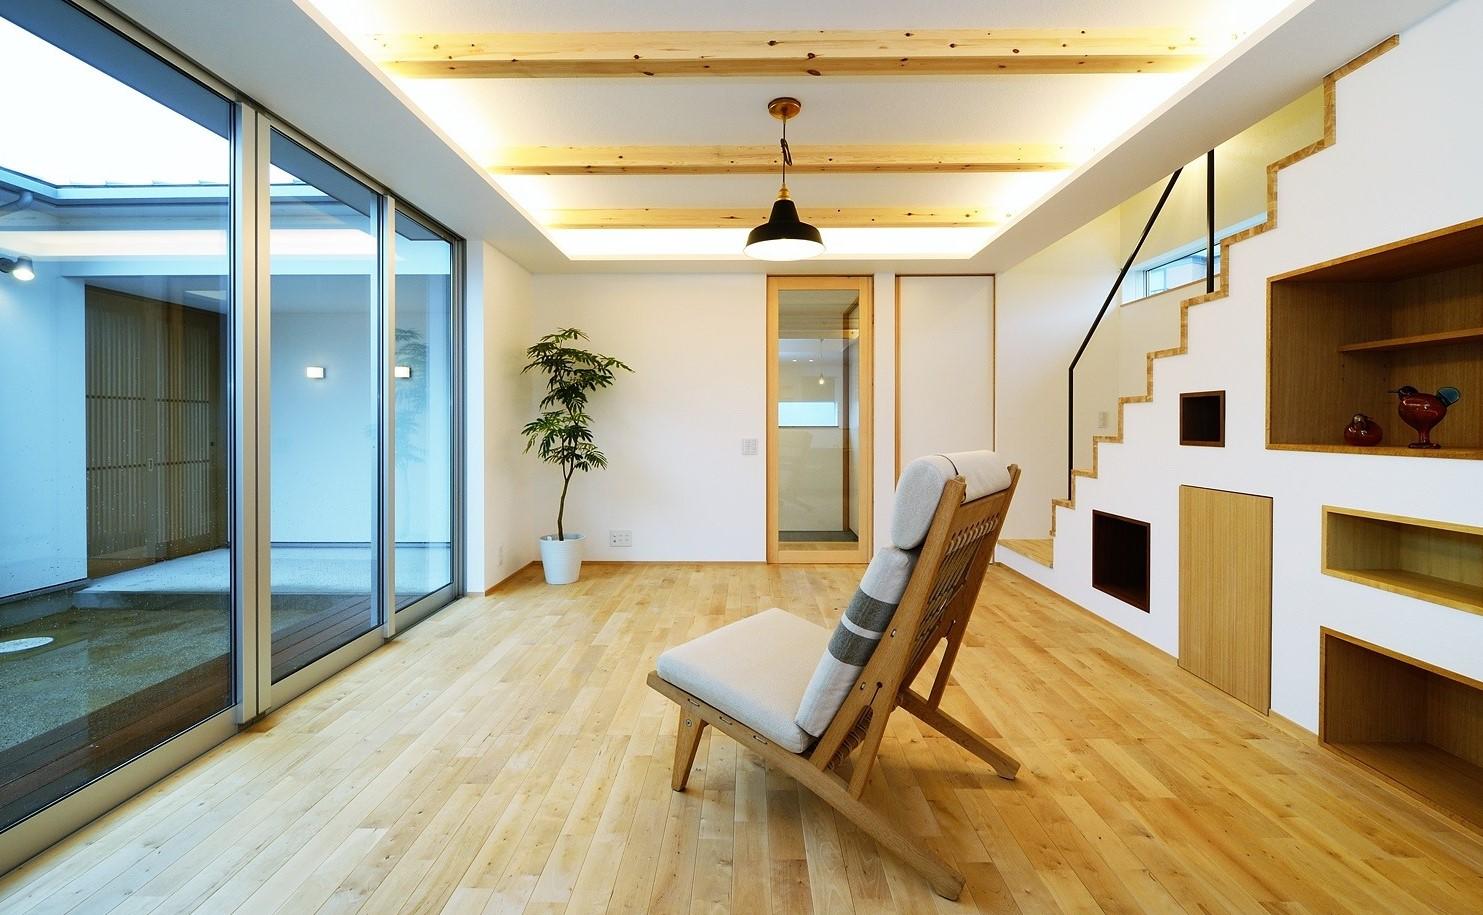 Bật mí xu hướng thiết kế nội thất tối giản vạn người mê